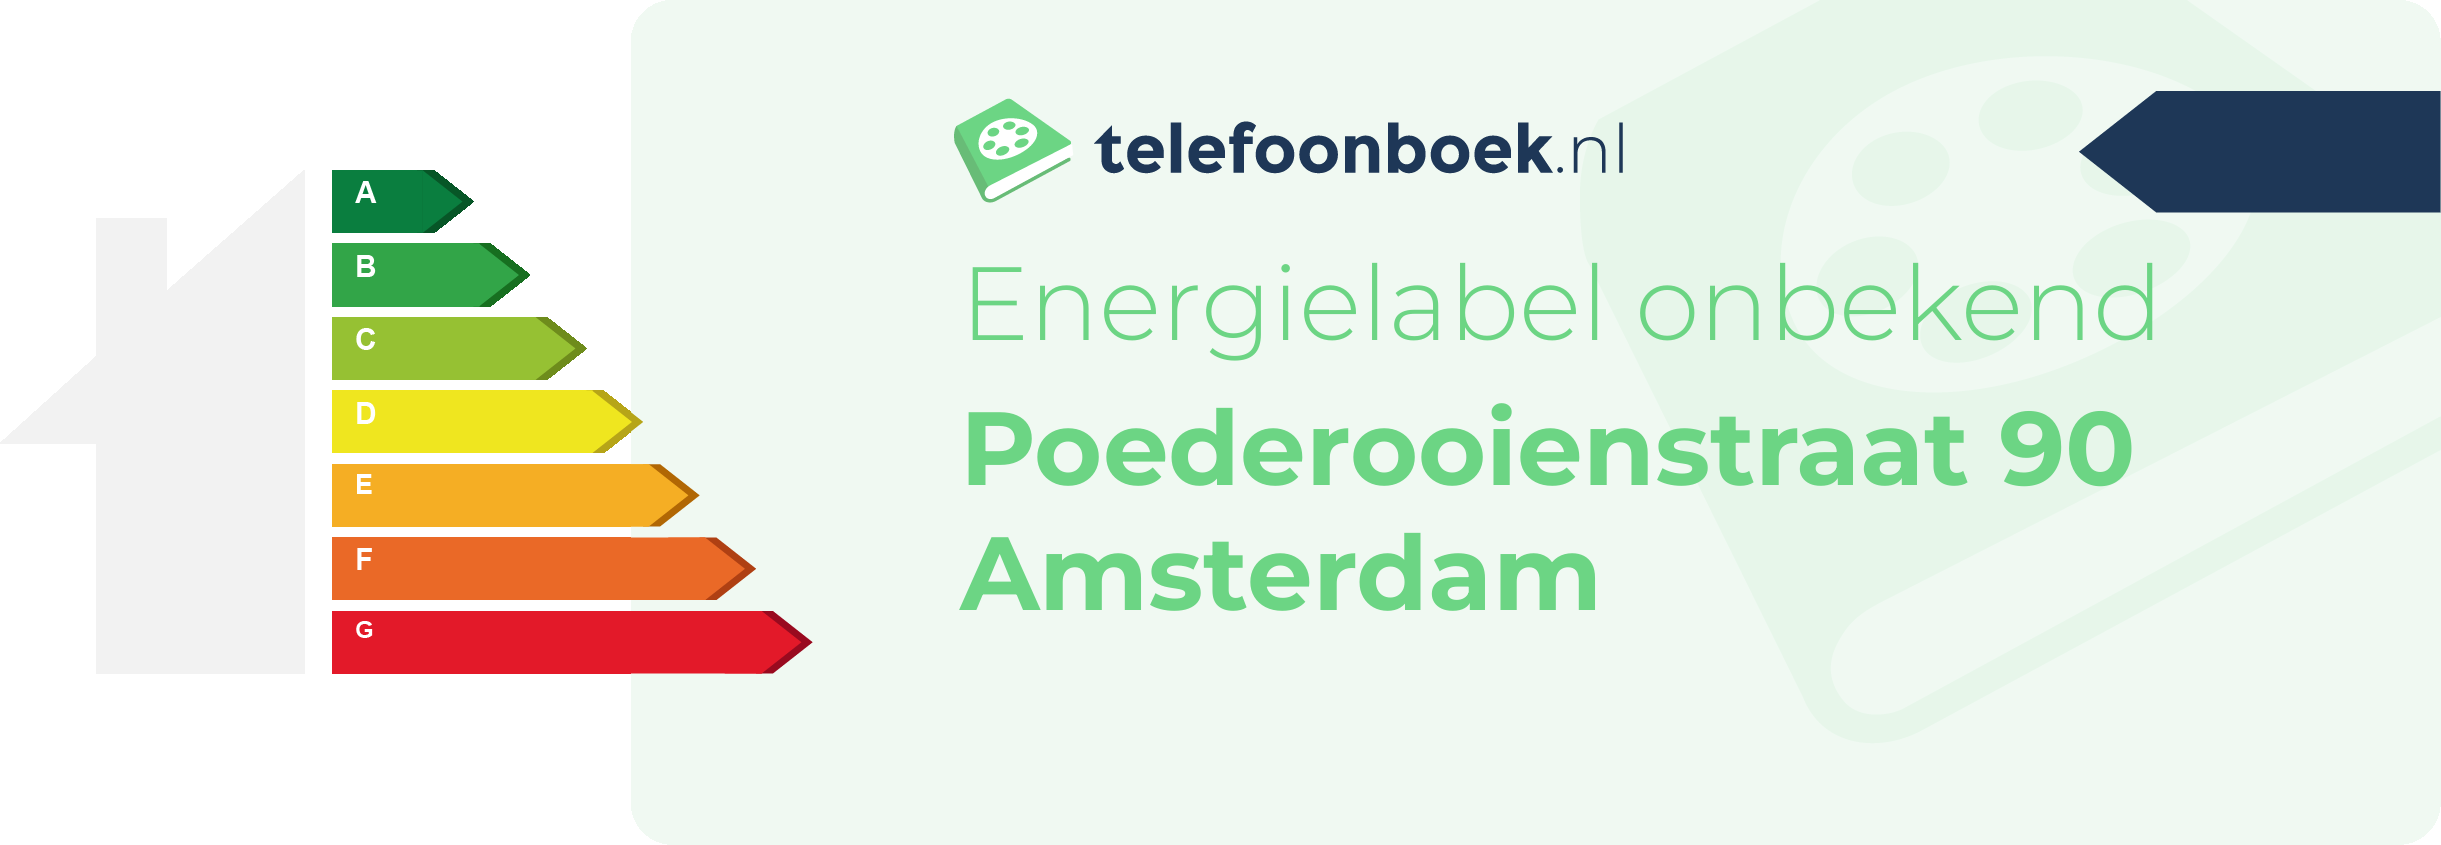 Energielabel Poederooienstraat 90 Amsterdam